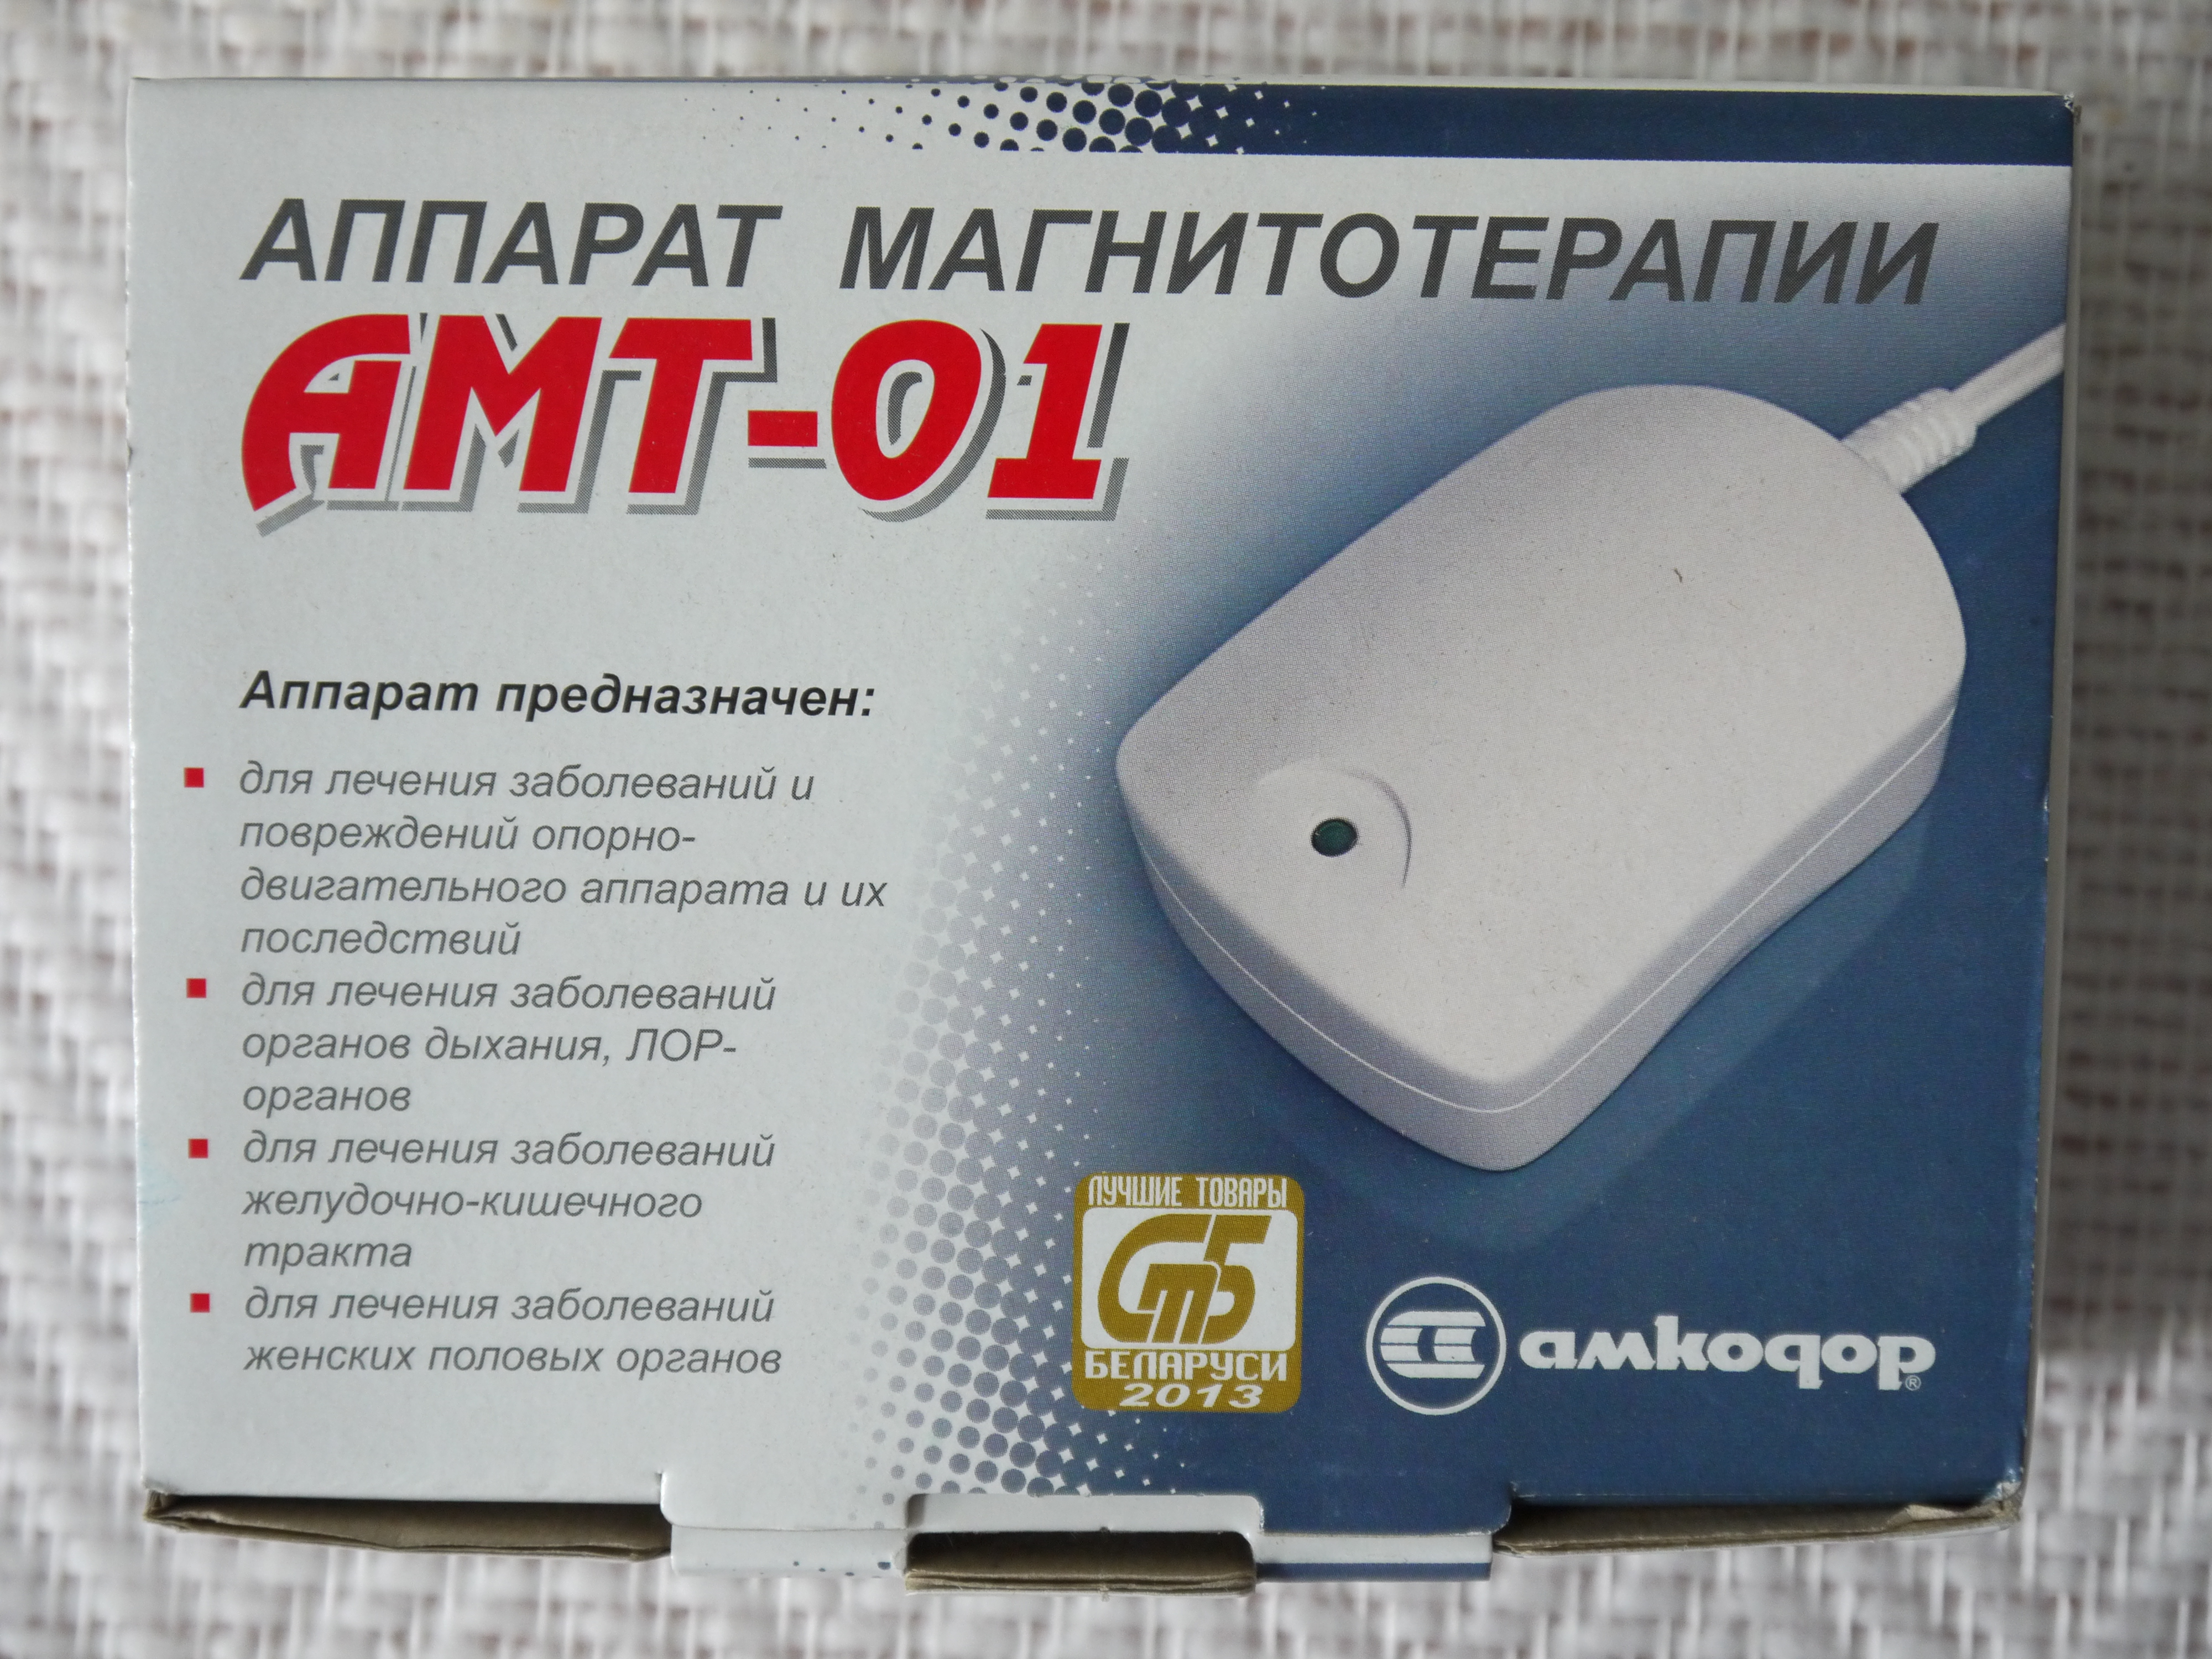 Аппарат амт 01 купить. Аппарат Магнито терапии АМТ-01. Аппарат магнитотерапии АМТ-01 (Беларусь). Магнит Амкодор АМТ 01. Аппарат магнитотерапии переносной АМТ 01.